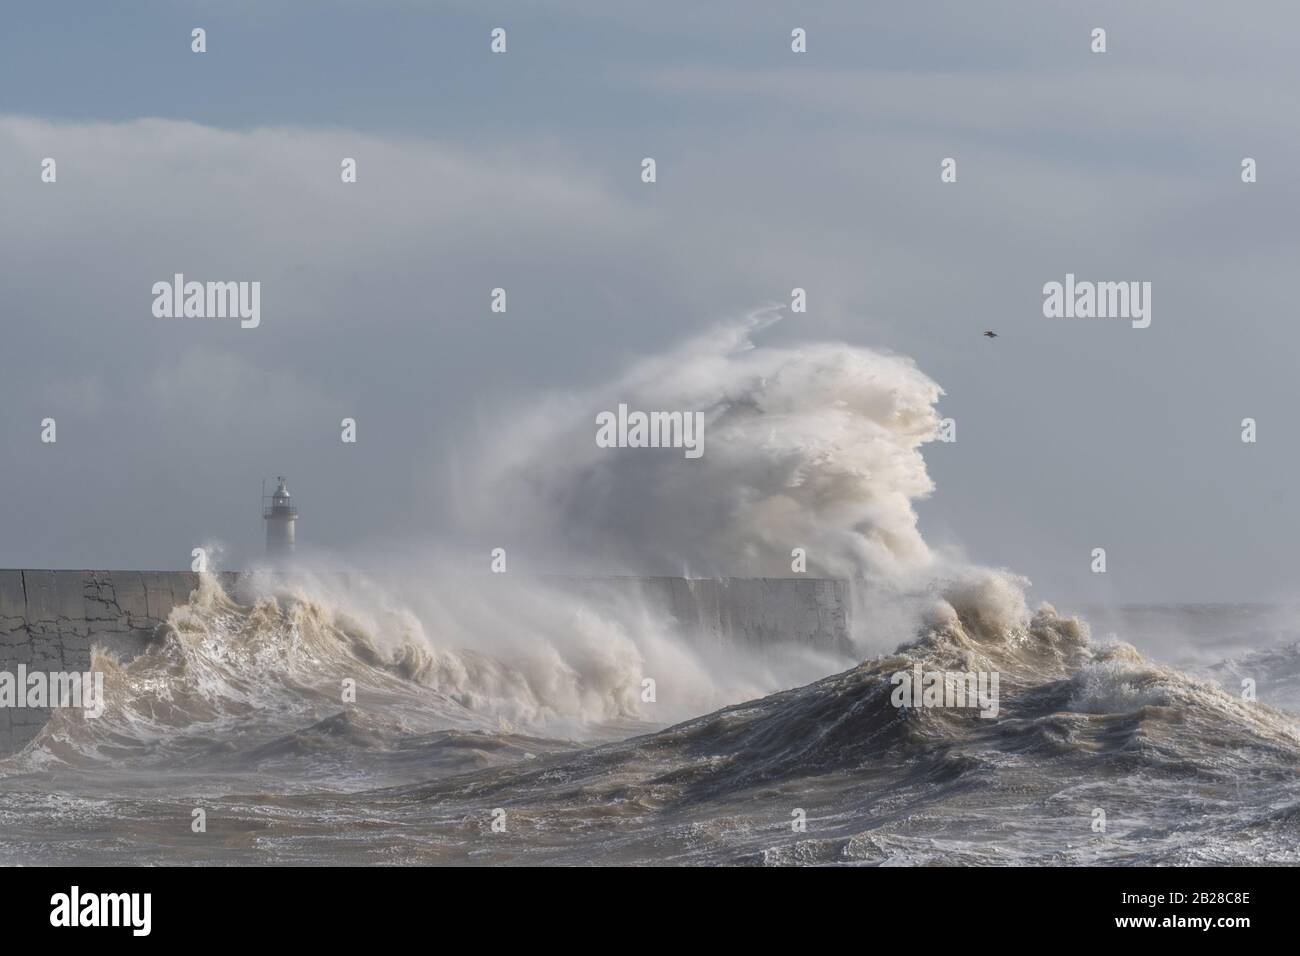 Newhaven, East Sussex am 29. Februar 2020. Storm Jorge streikt England und bringt starke Winde und starken Regen. Stockfoto